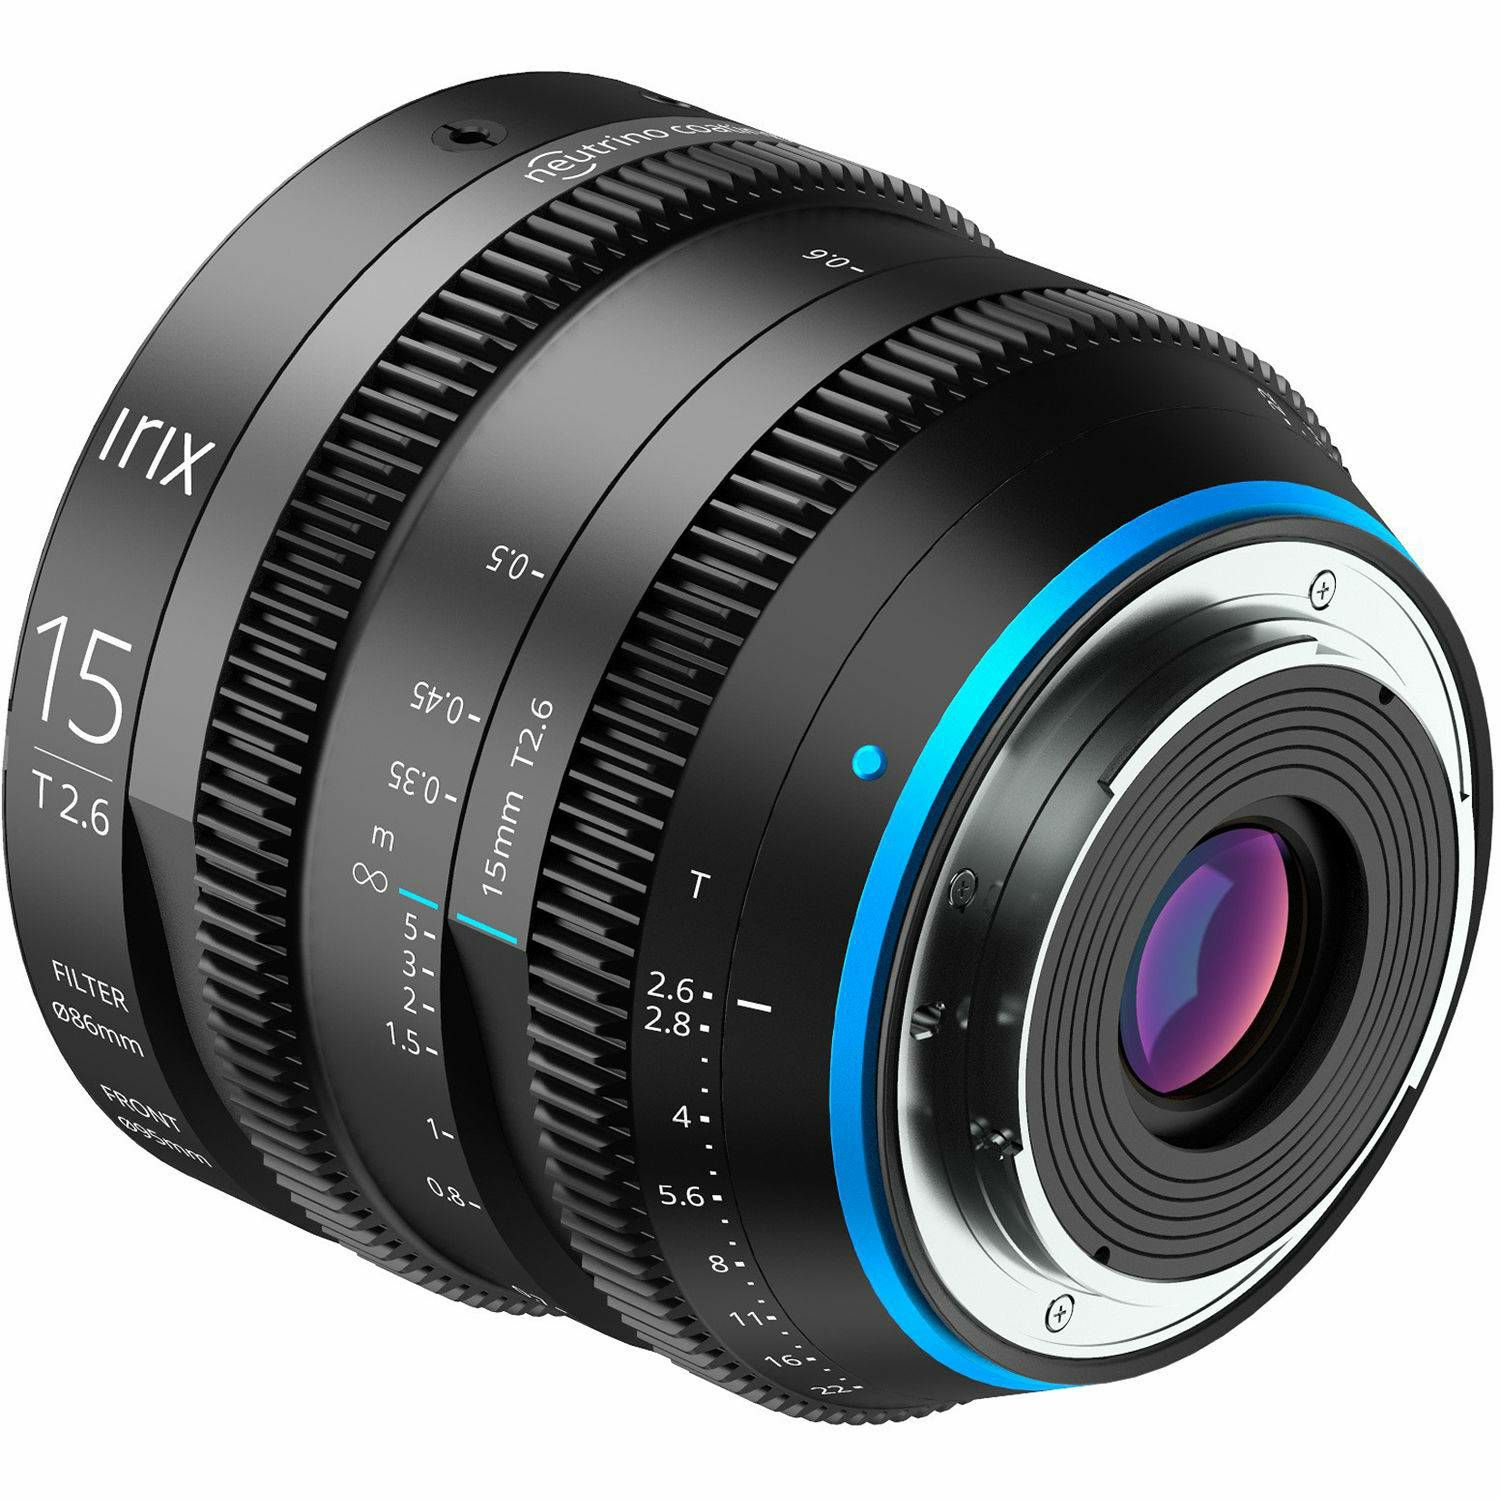 Irix Cine 15mm T2.6 Metric širokokutni objektiv za Sony E-mount